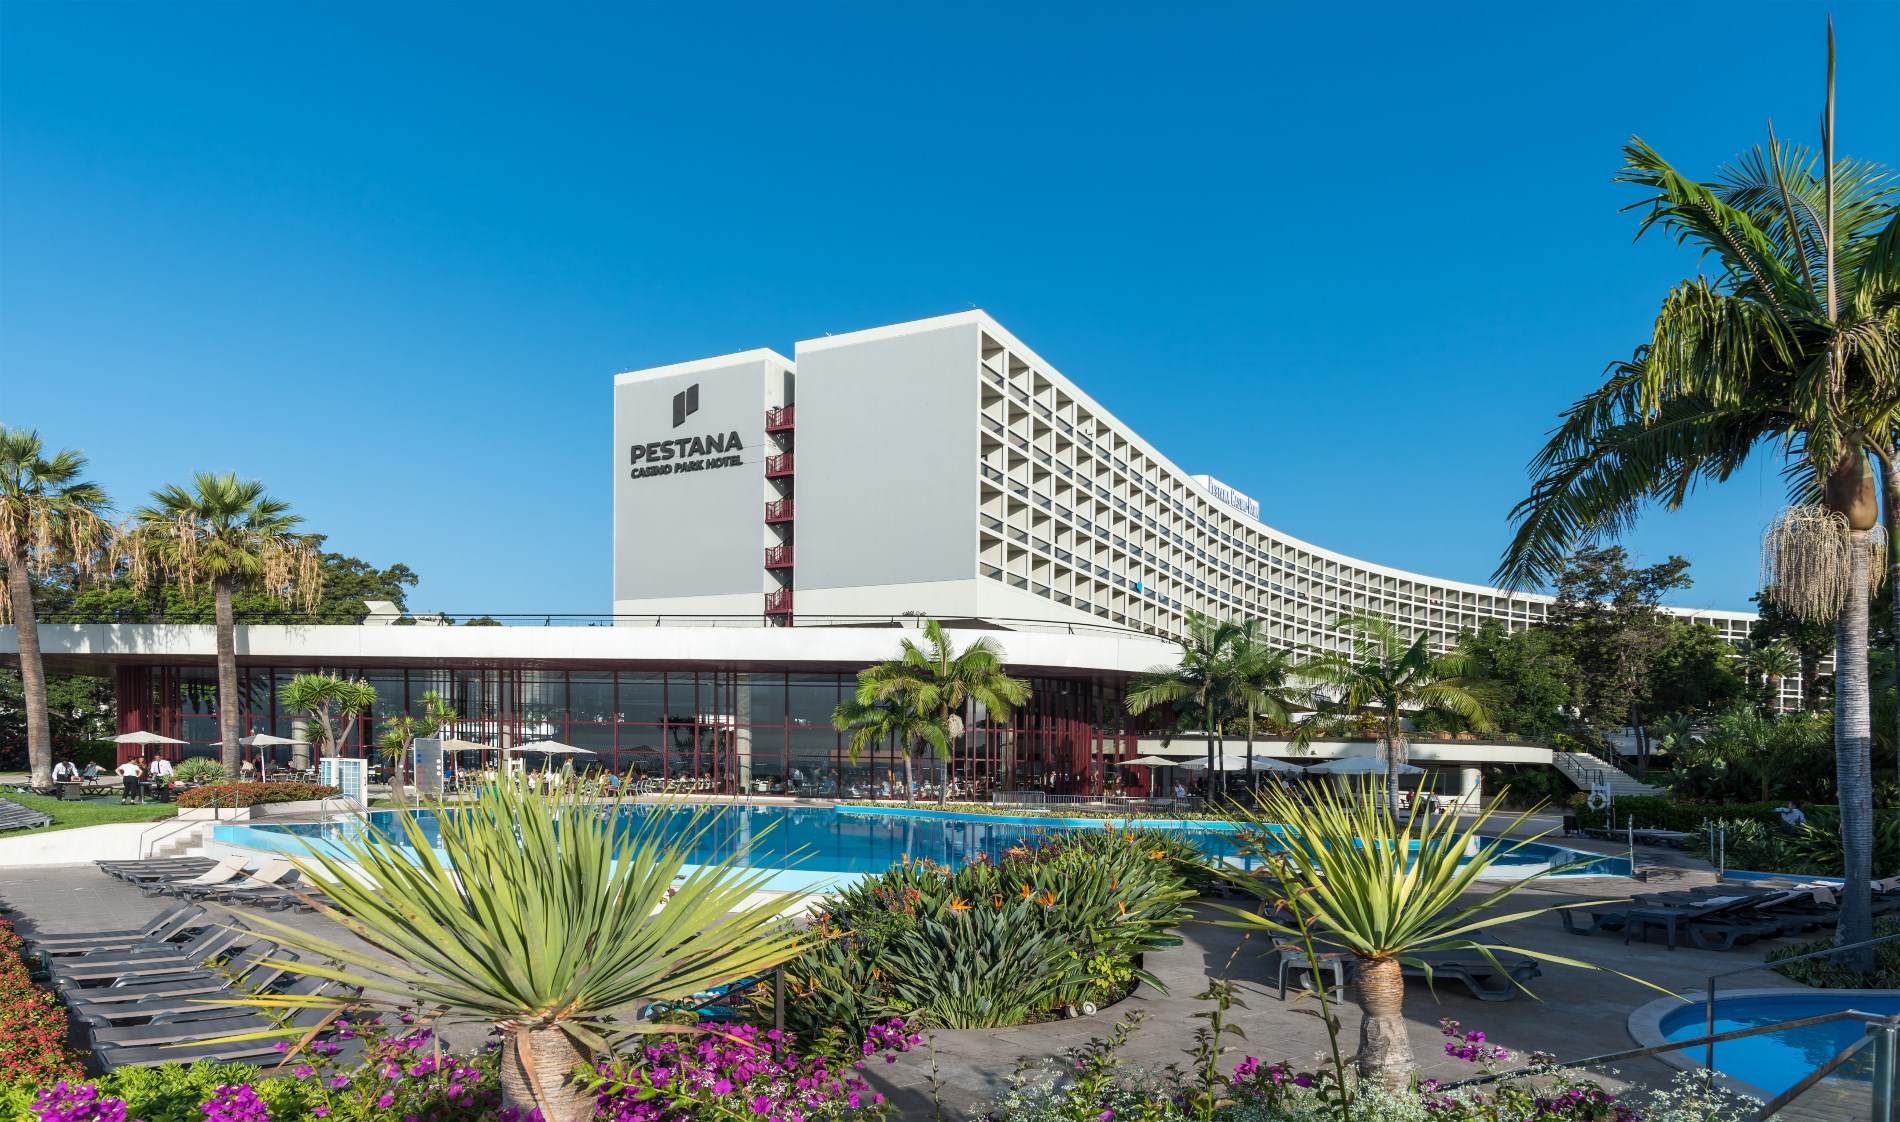 pestana casino park ocean and spa hotel